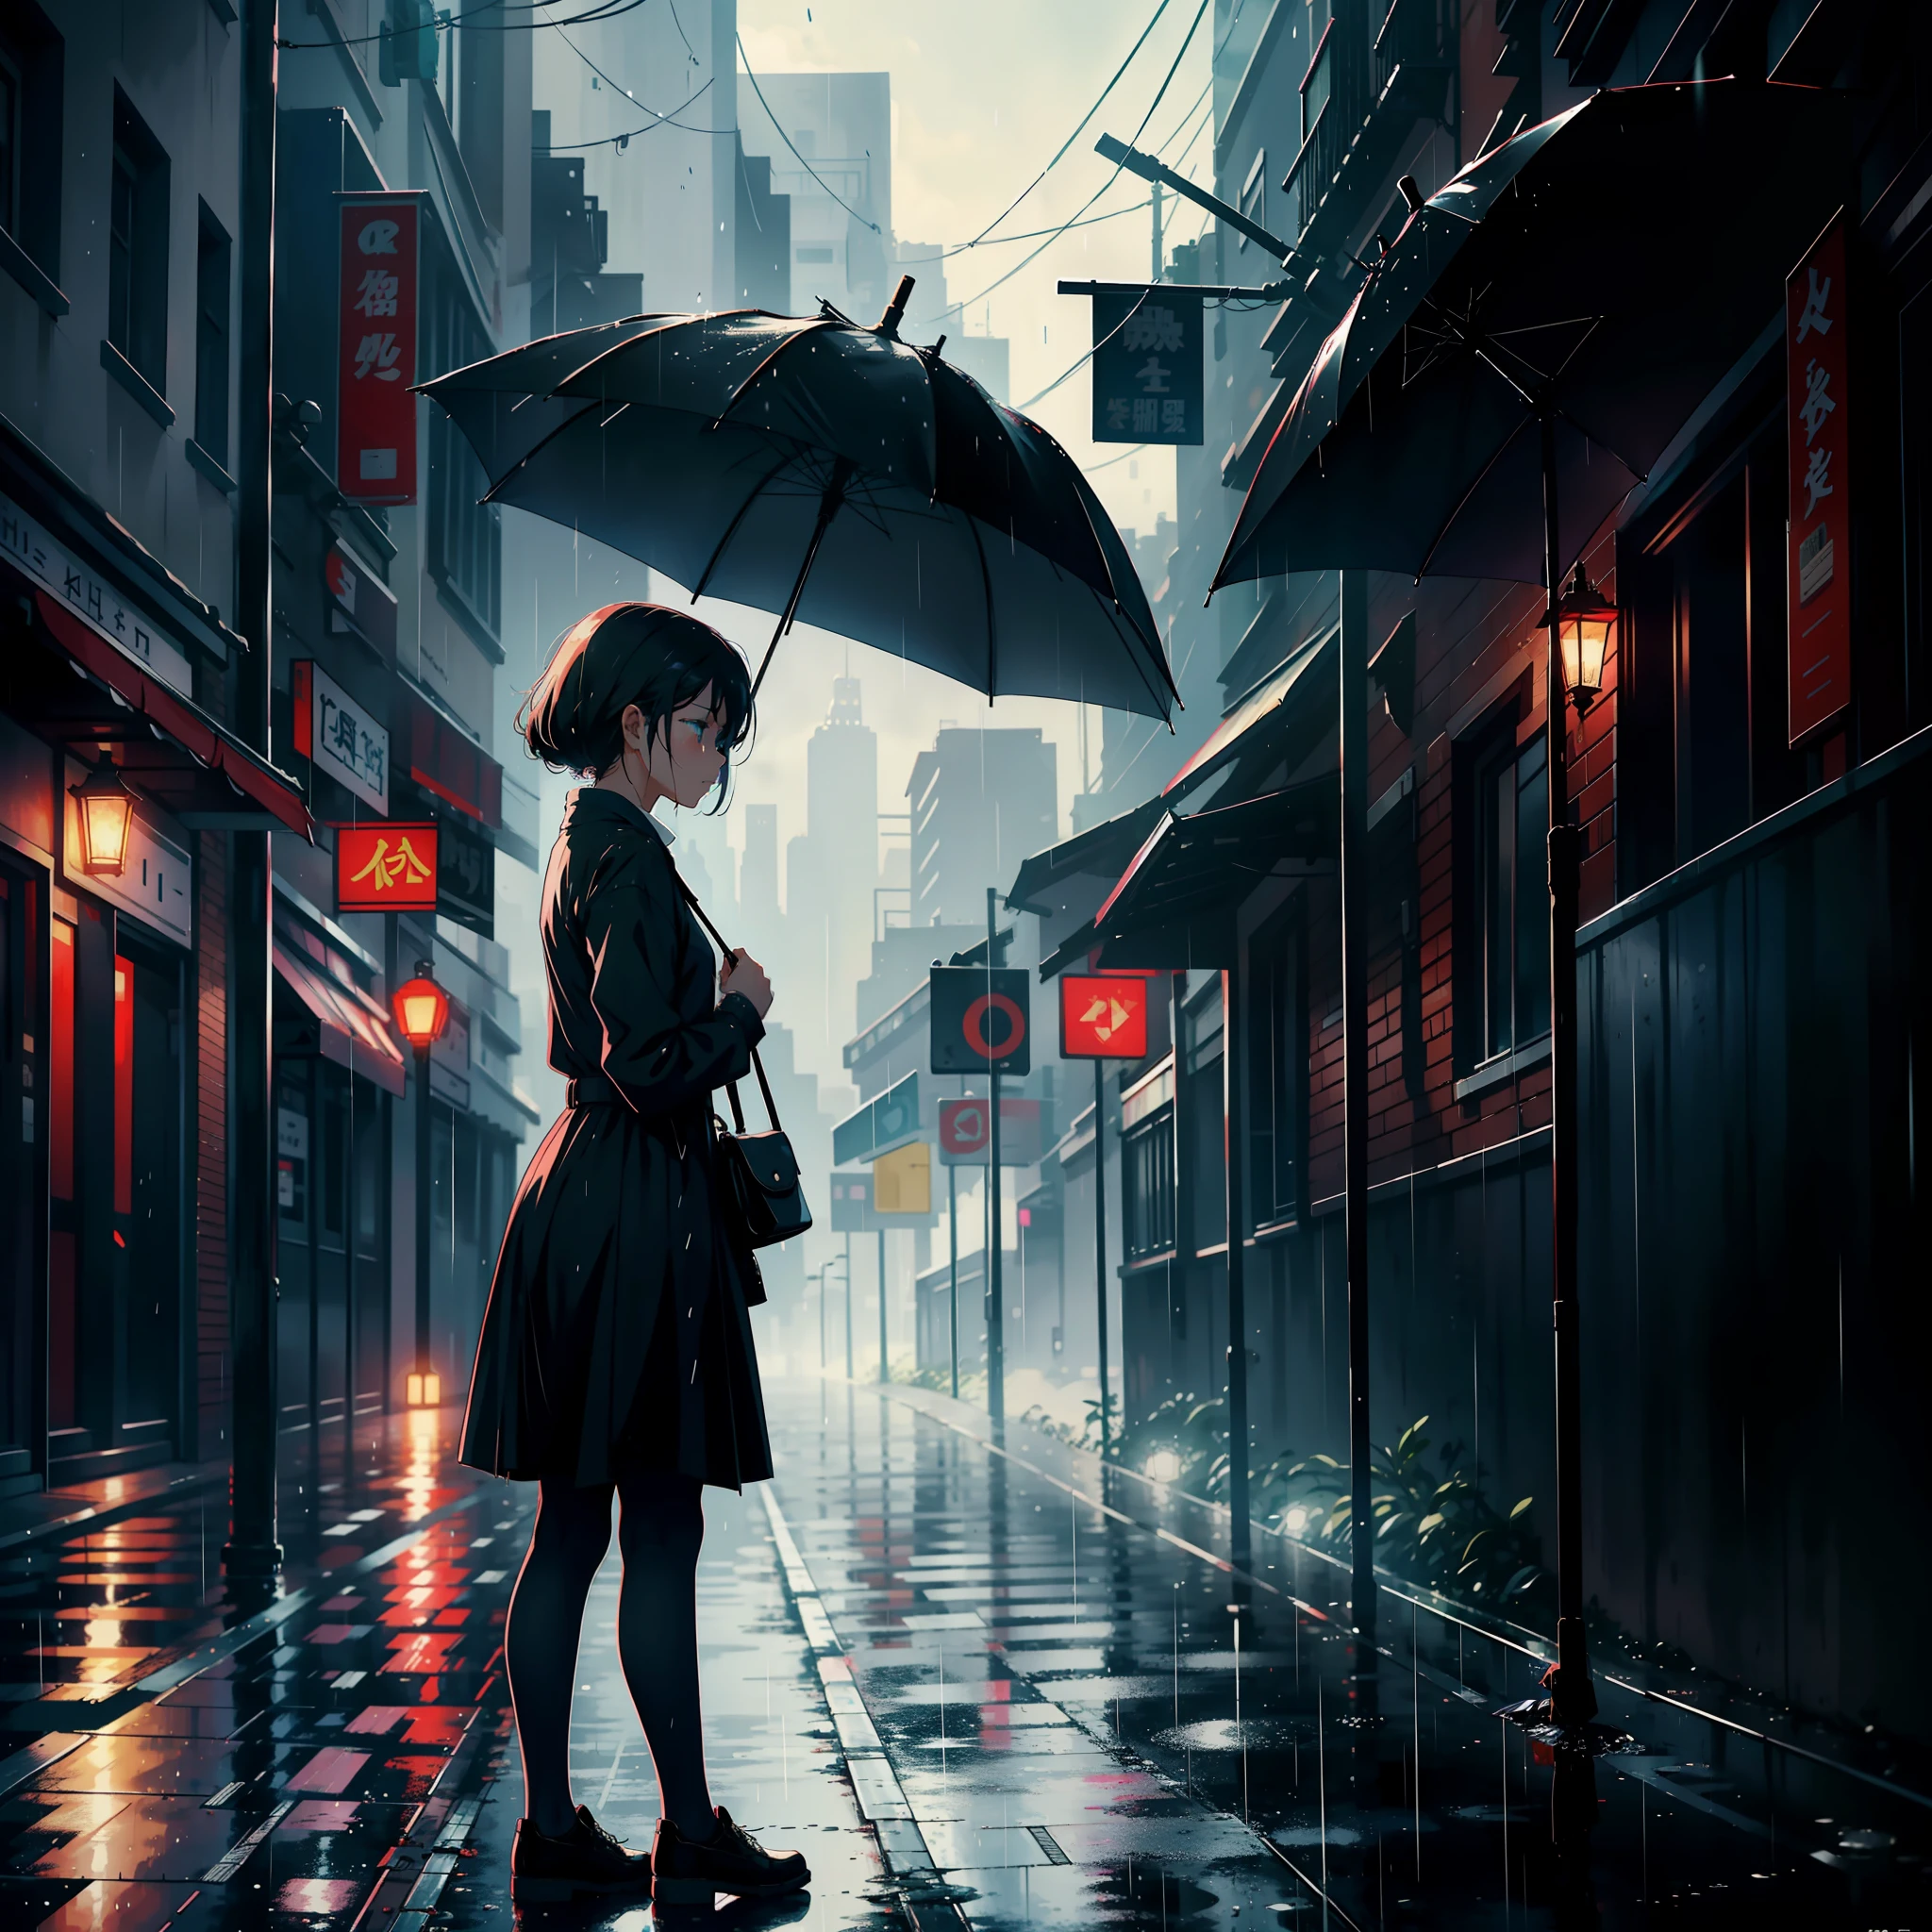 وقفت فتاة تحمل مظلة على جانب الشارع, بكاء, تبدو حزينة وتمطر